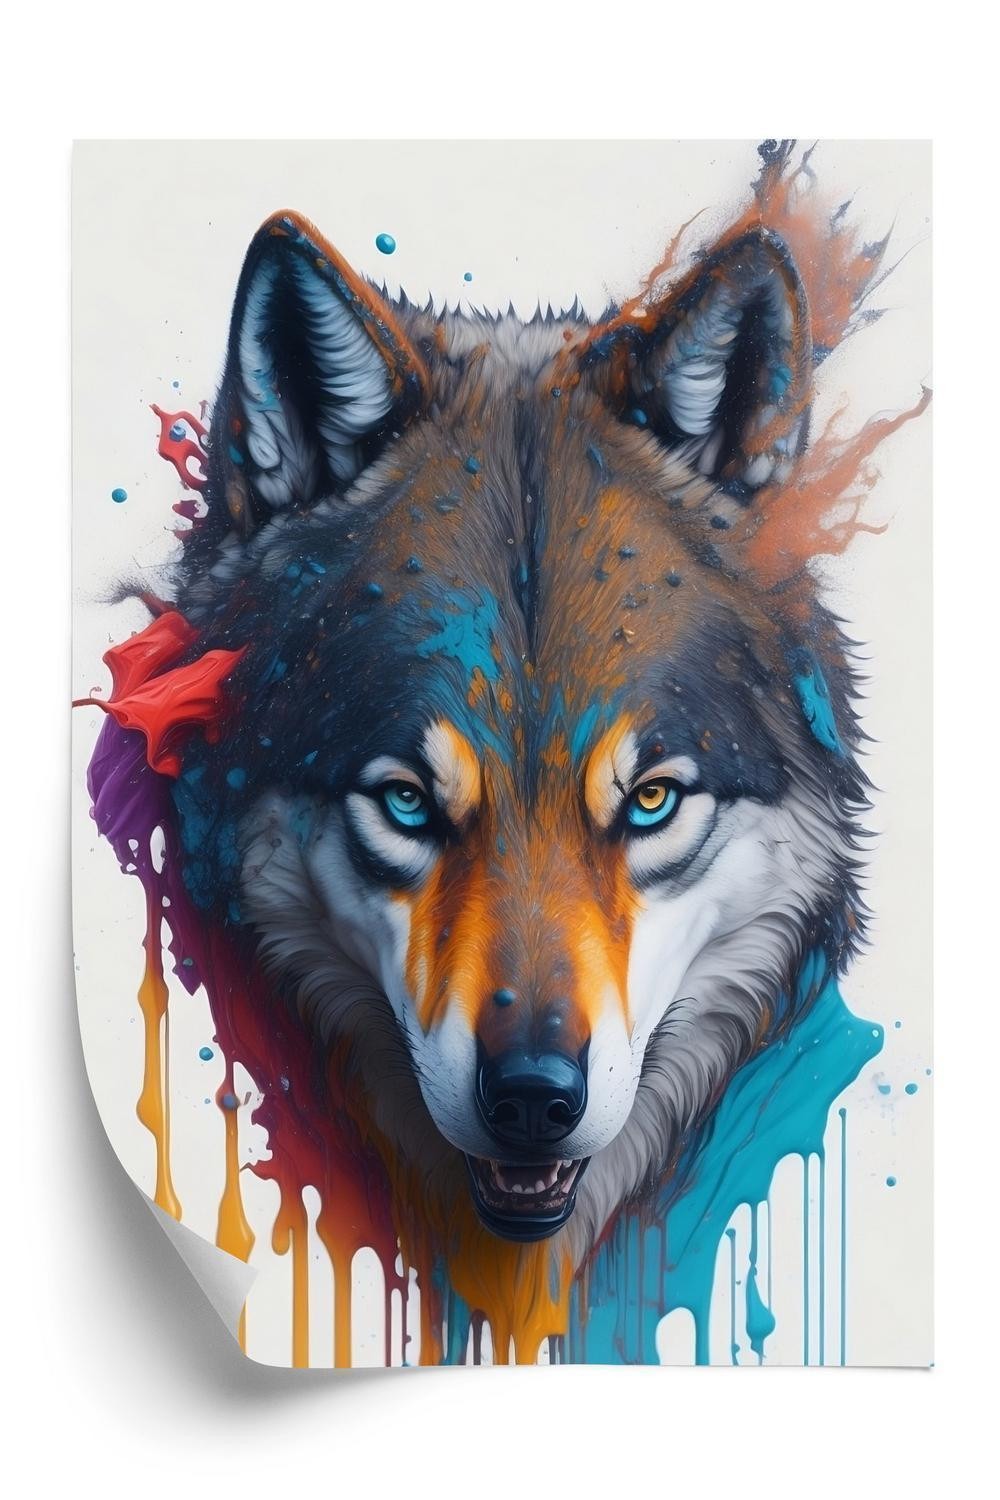 Plakat - Portræt af en ulv i forskellige farver